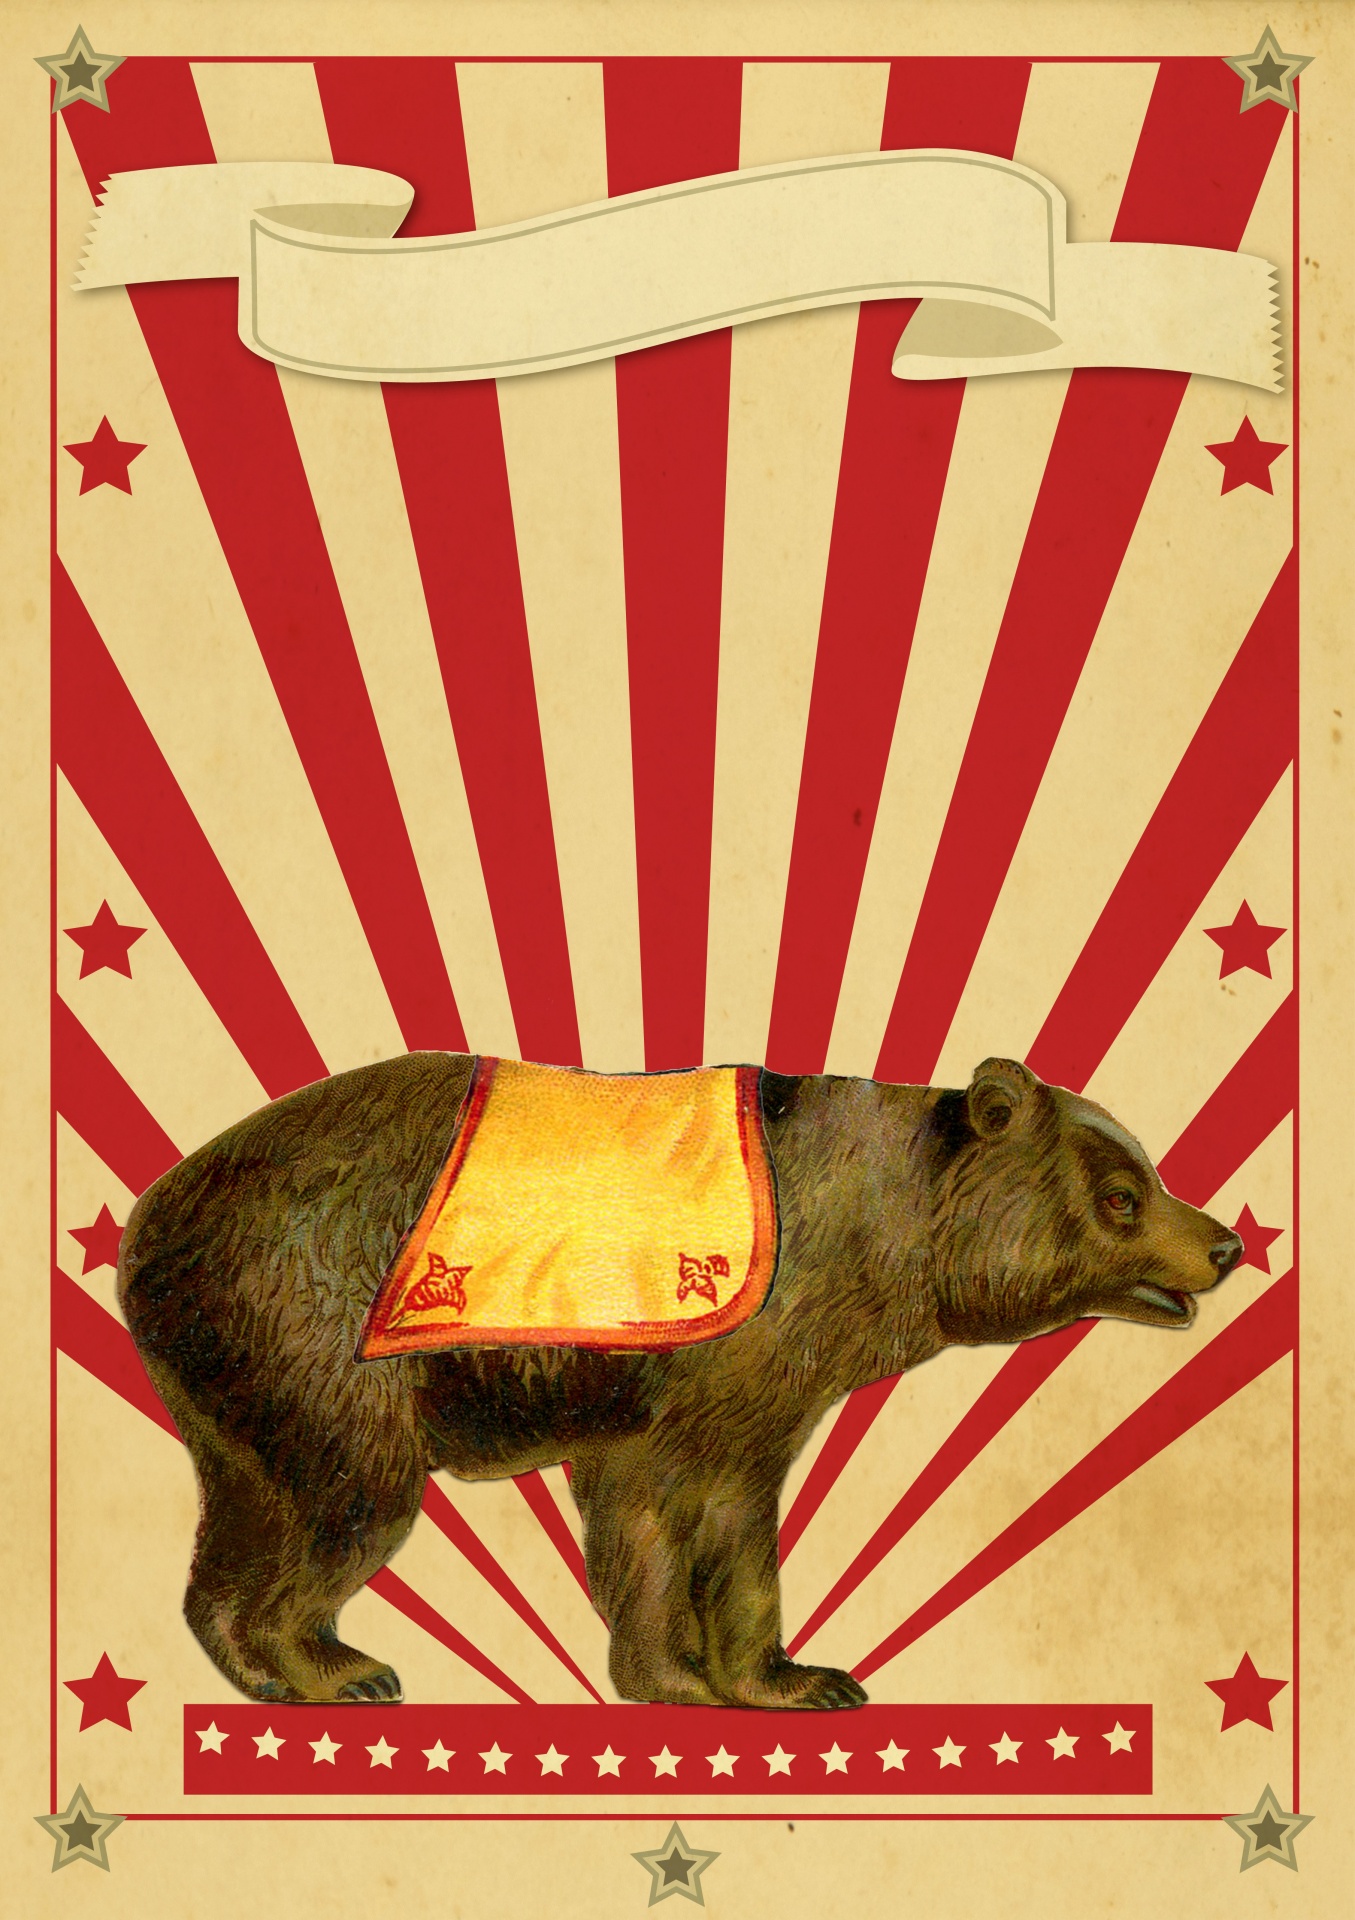 Cirkus retro plakát medvěd